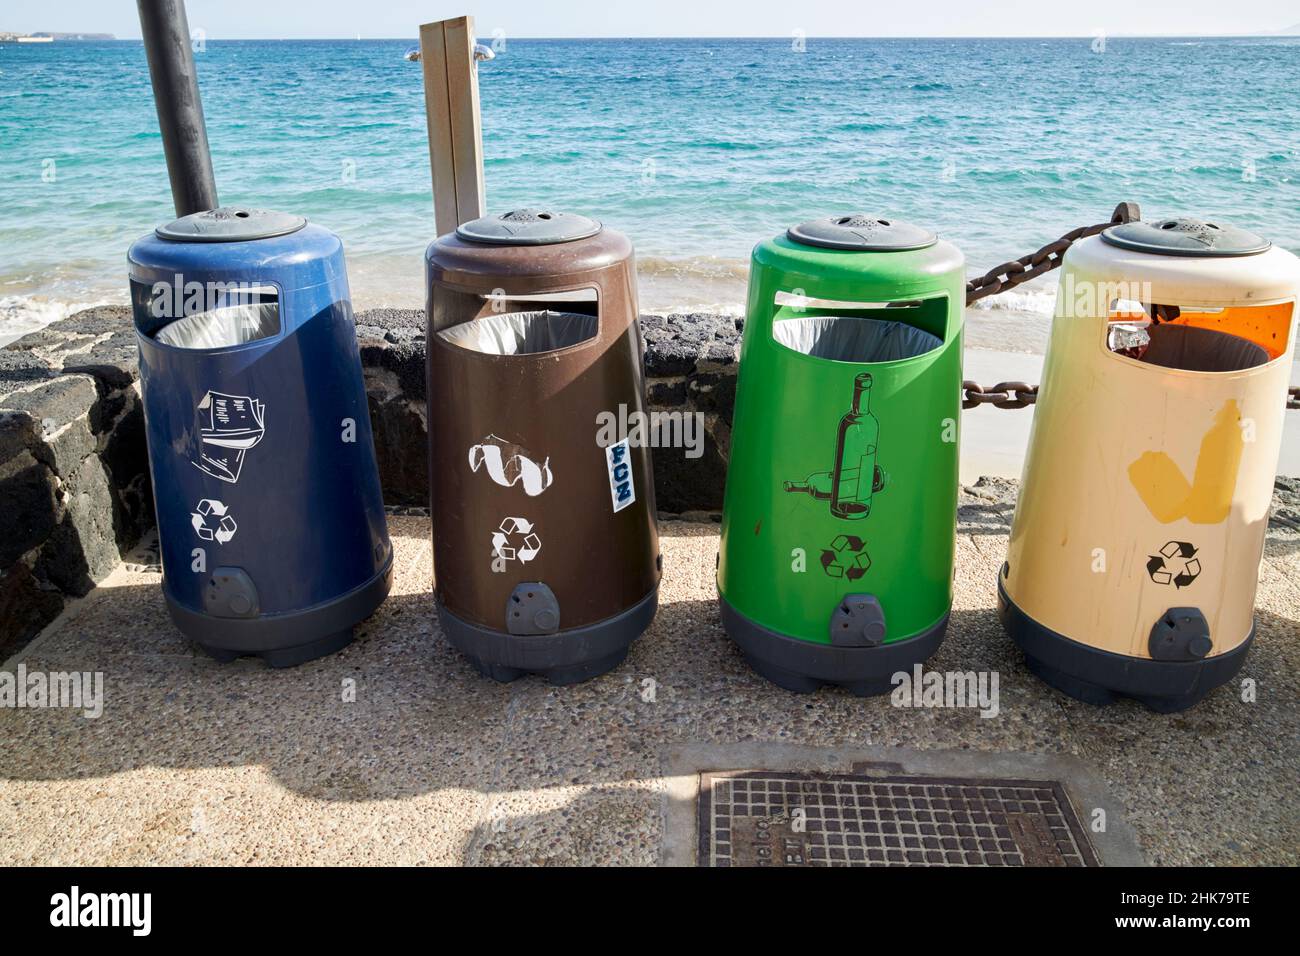 Varios contenedores públicos de reciclaje junto a la playa playa blanca Lanzarote Islas Canarias España Foto de stock